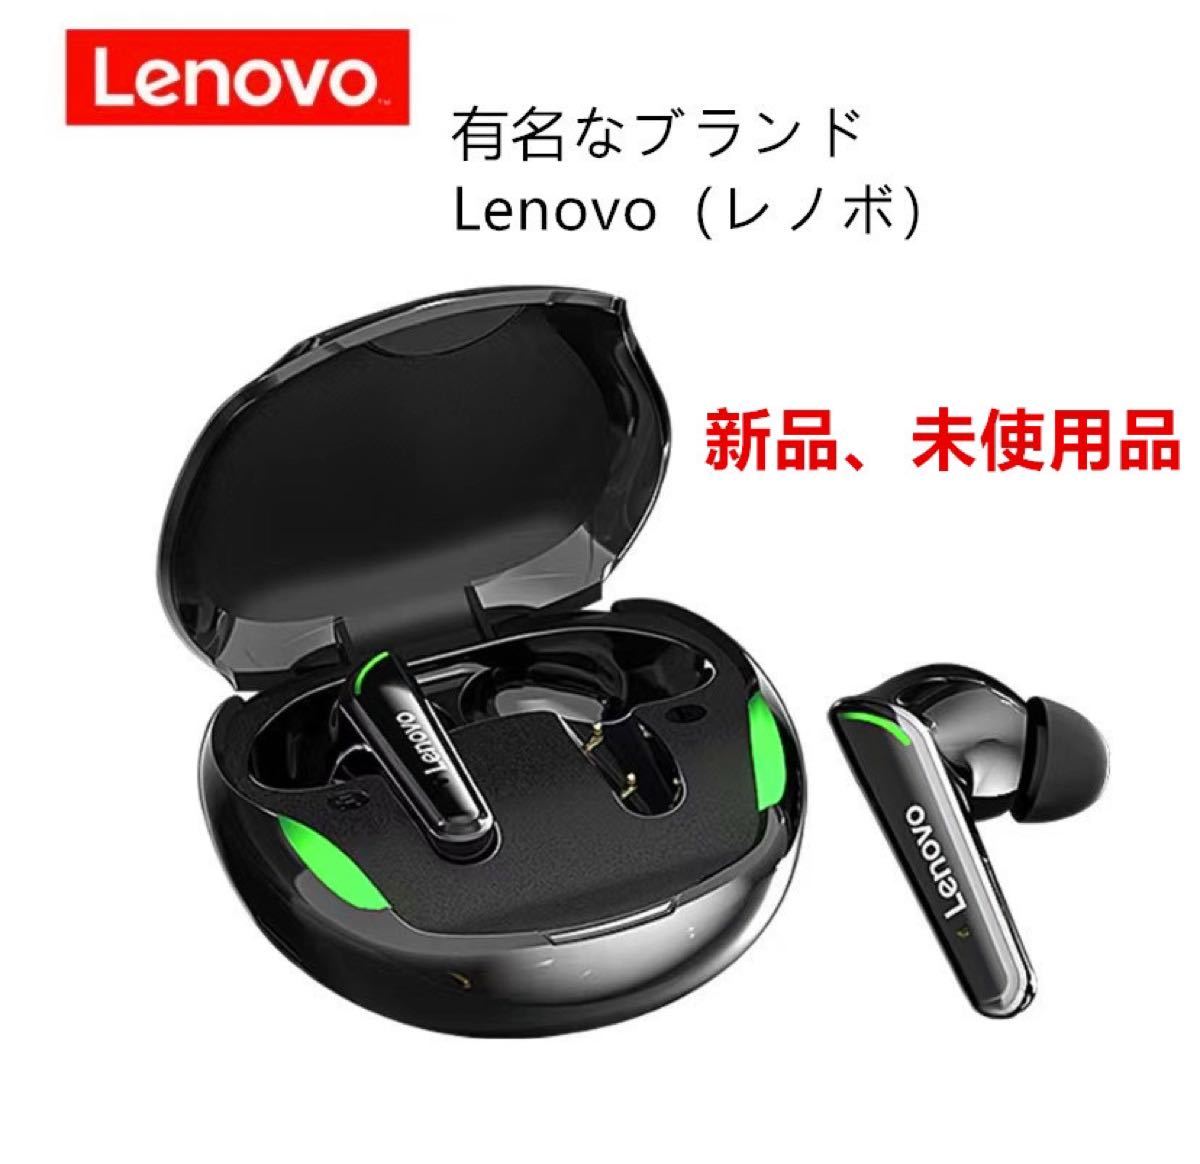 イヤホン ワイヤレスイヤホン Bluetoothイヤフォンゲーミングイヤホン Lenovo レノボ 高音質 超軽量 即日発送可能　